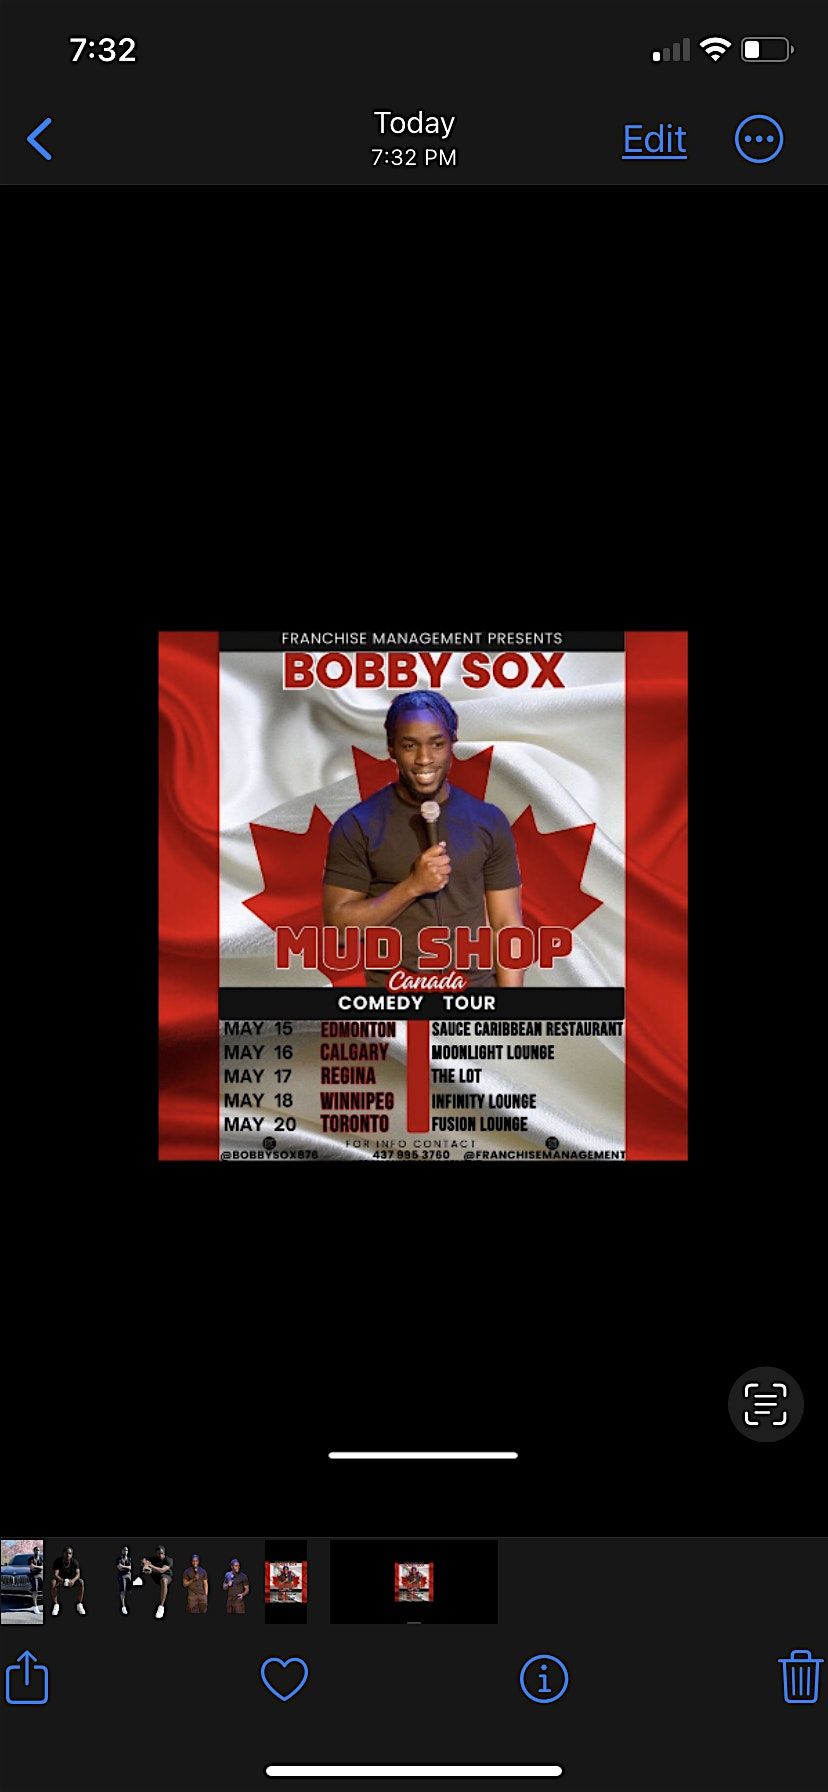 BOBBY SOX - MUD SHOP COMEDY TOUR CANADA - TORONTO